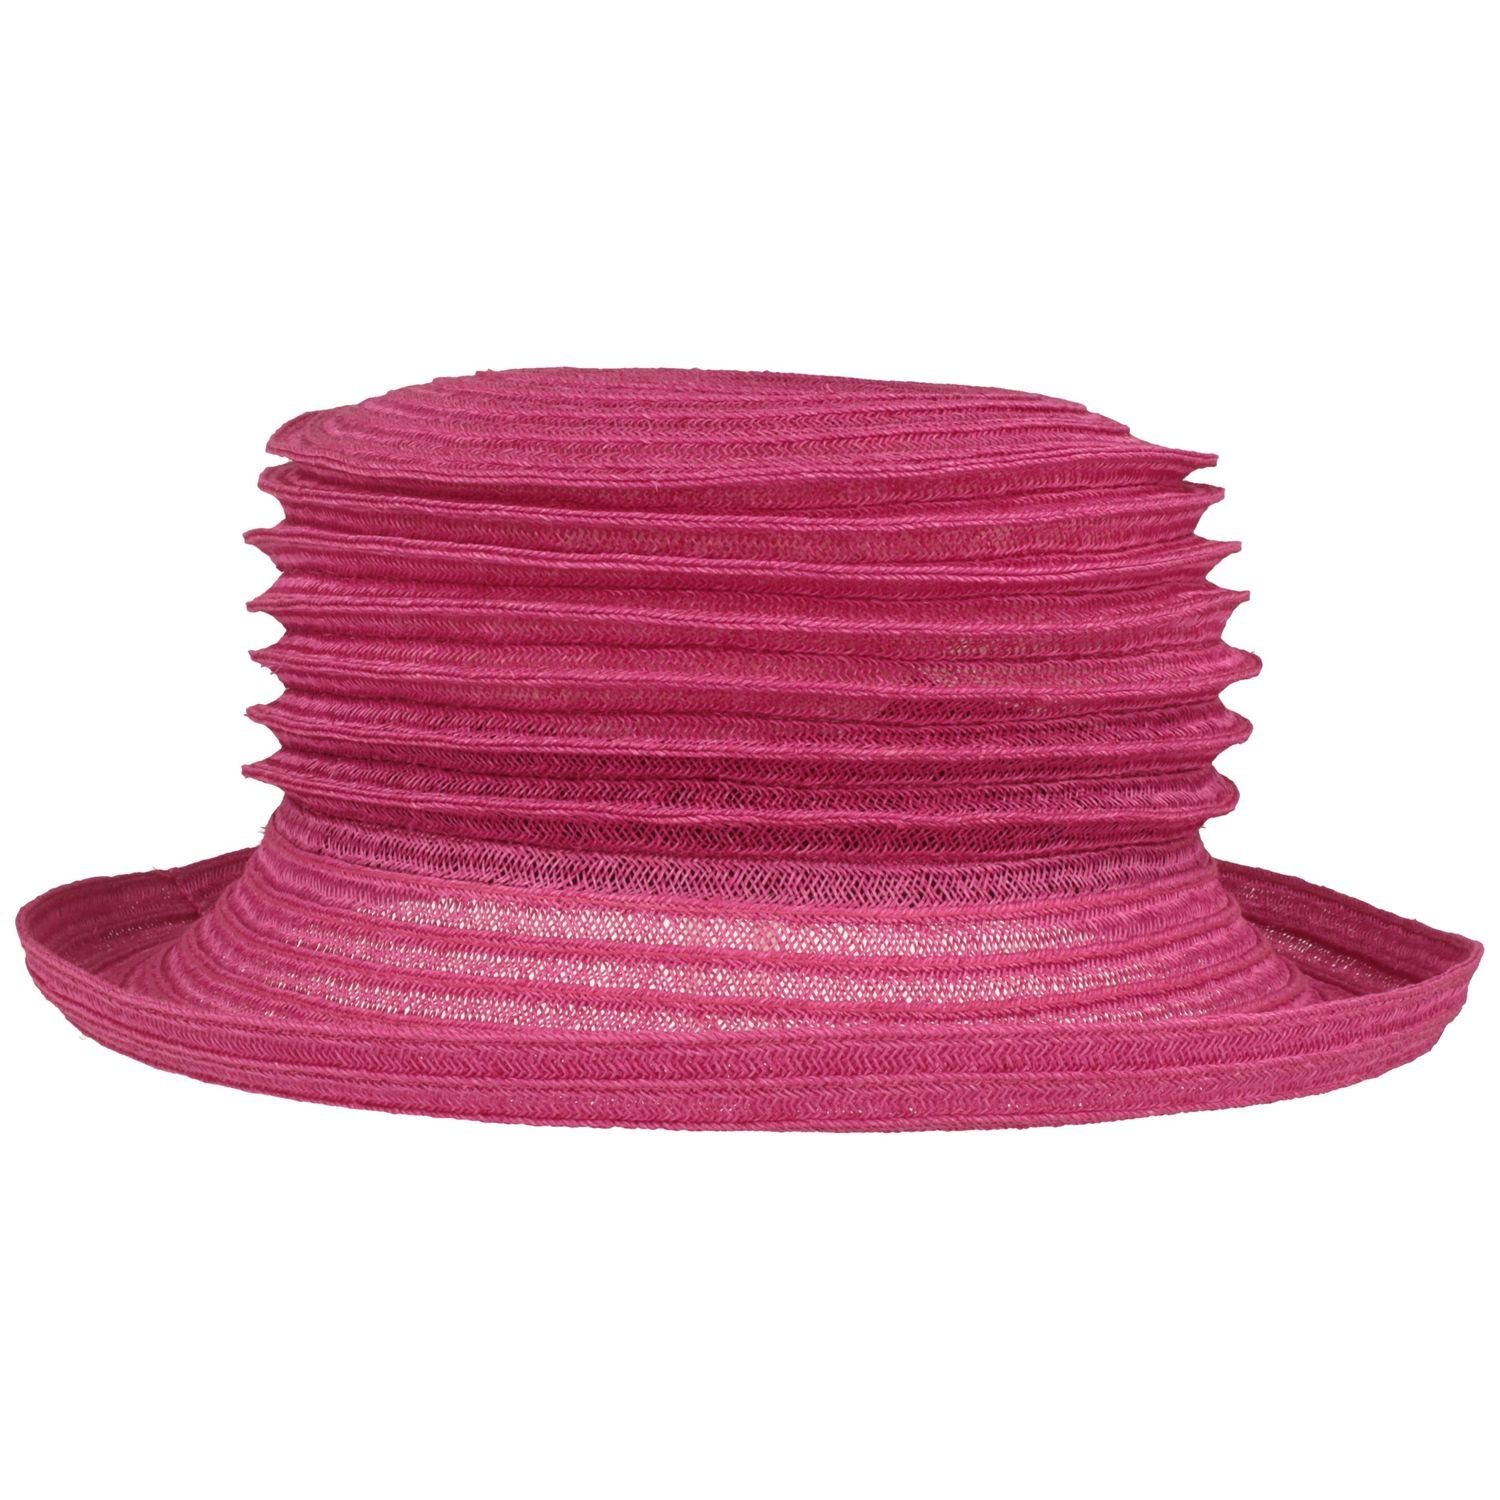 Mayser Strohhut knautschbarer & faltbarer Bortenhut Bella aus Hanf 9010 pink